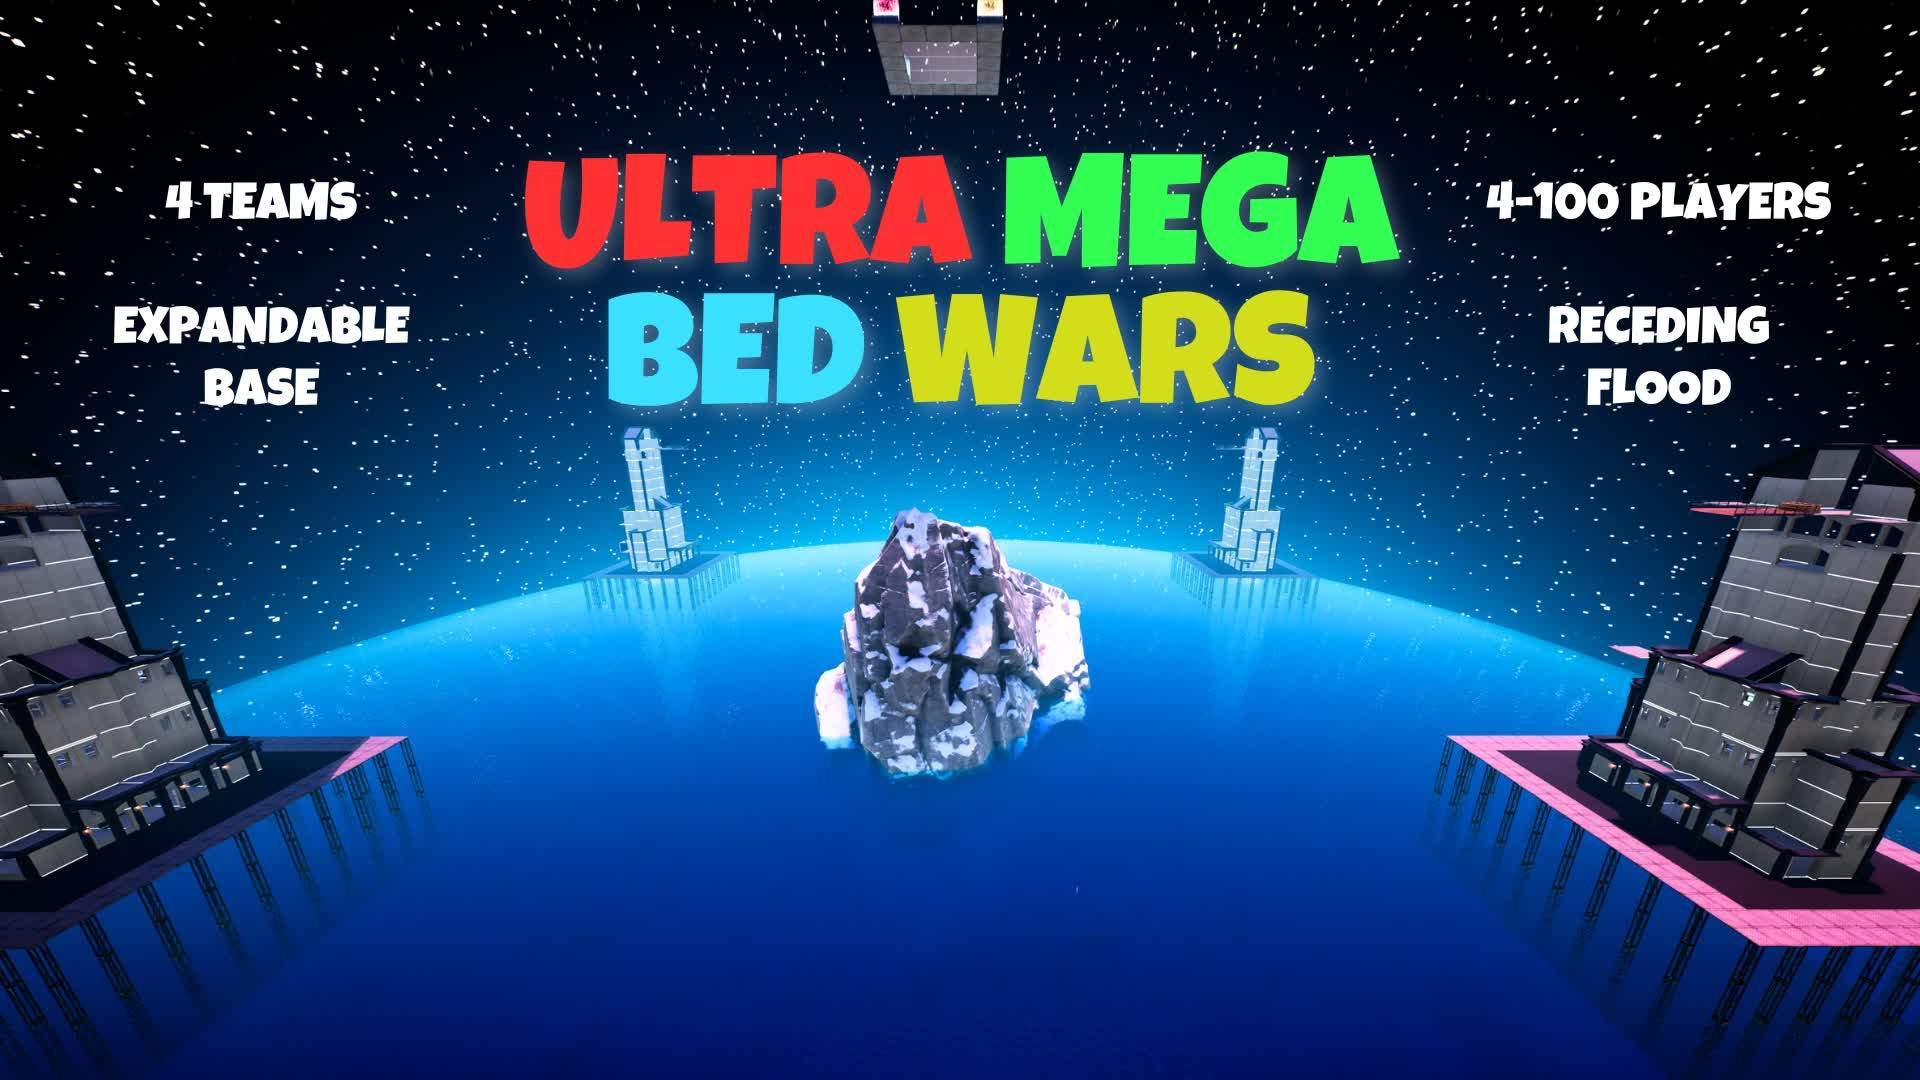 ULTRA-MEGA BED WARS